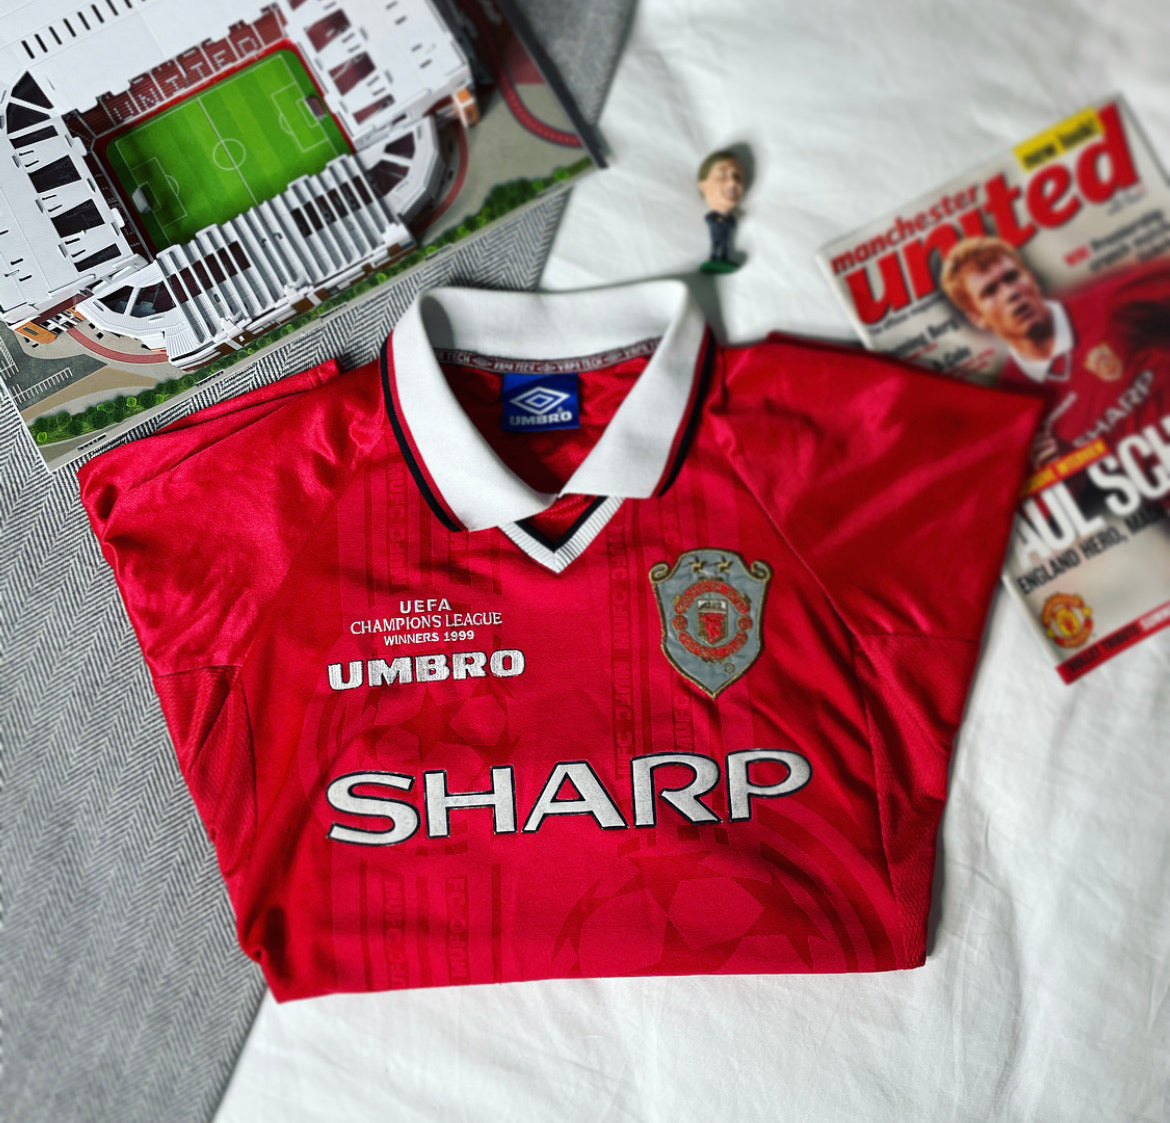 1997-99 Manchester United European ‘Treble’ Shirt Beckham #7 | Very Good | XL